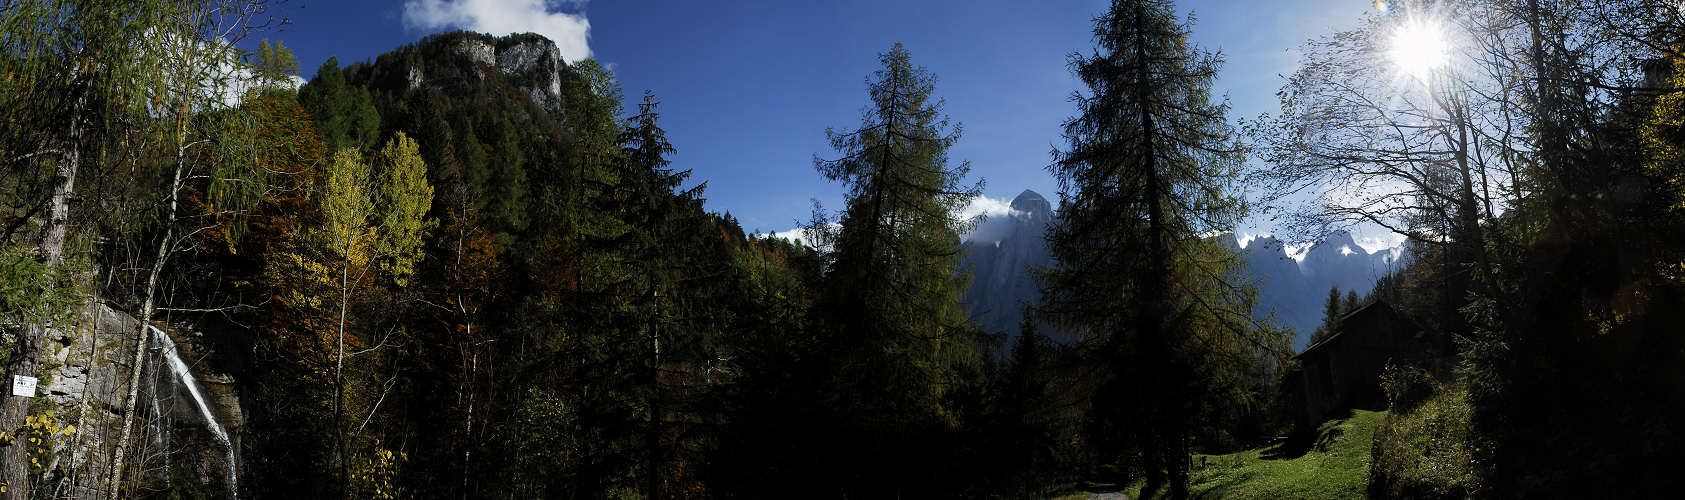 Agner, Valle di San Lucano, Taibon Agordino, Dolomiti, Pale di San Martino